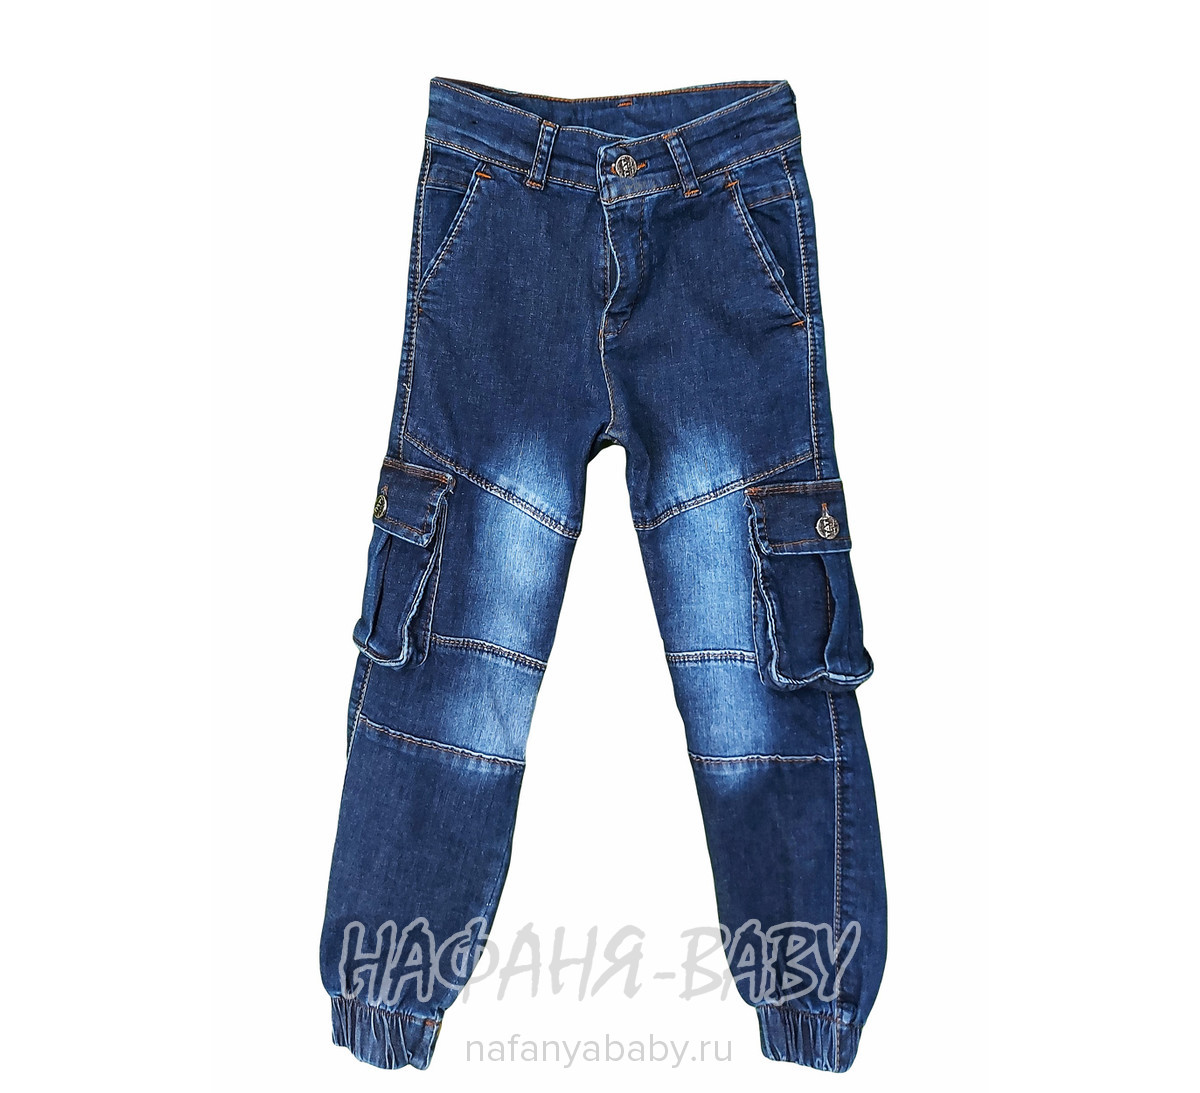 Детские джинсы TATI Jeans арт: 1105, 5-9 лет, оптом Турция